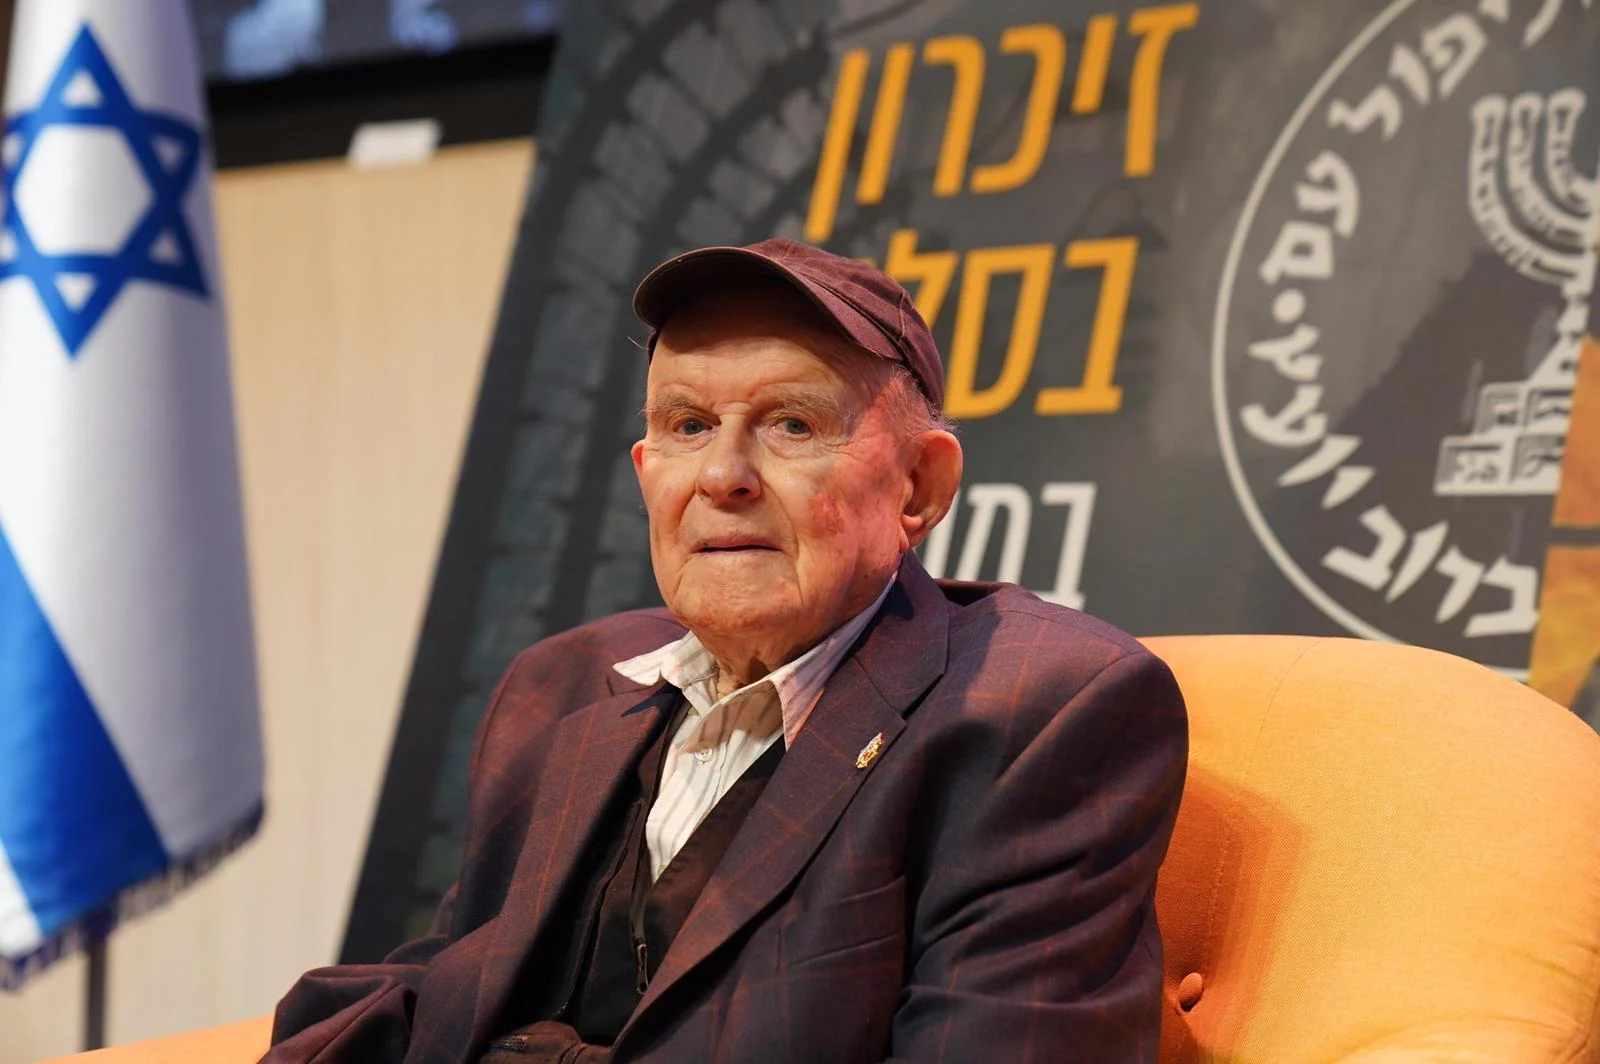 מרדכי צ'כנובר, שורד מחנה בירקנאו-אושוויץ שסיפר את סיפורו באירוע